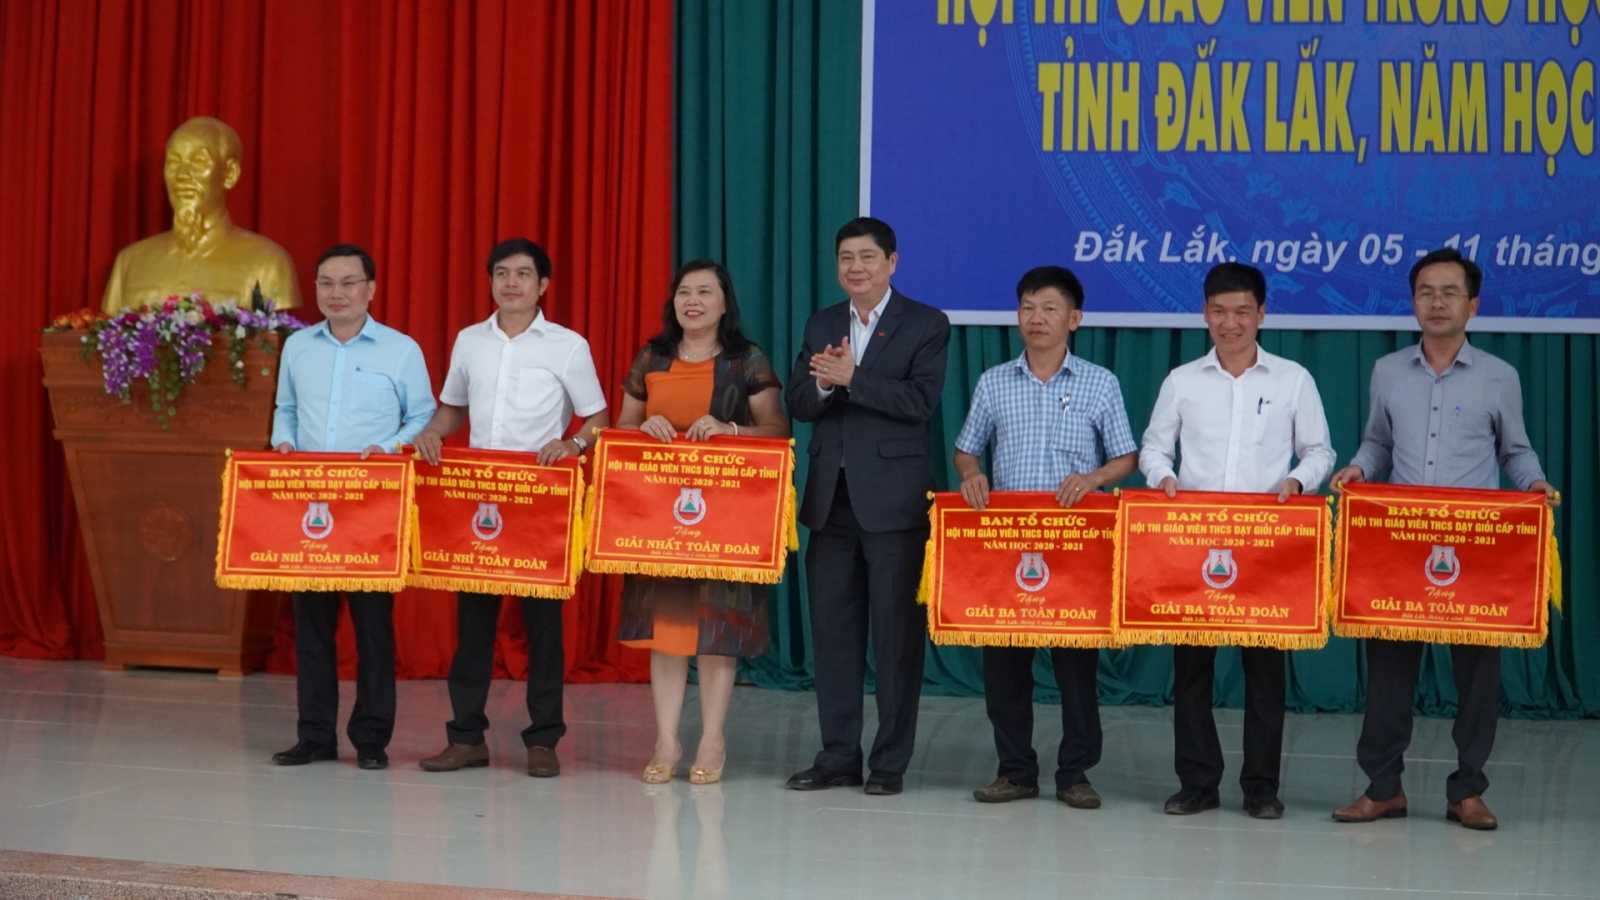 Đắk Lắk: Gần 400 giáo viên THCS được công nhận giáo viên dạy giỏi cấp tỉnh